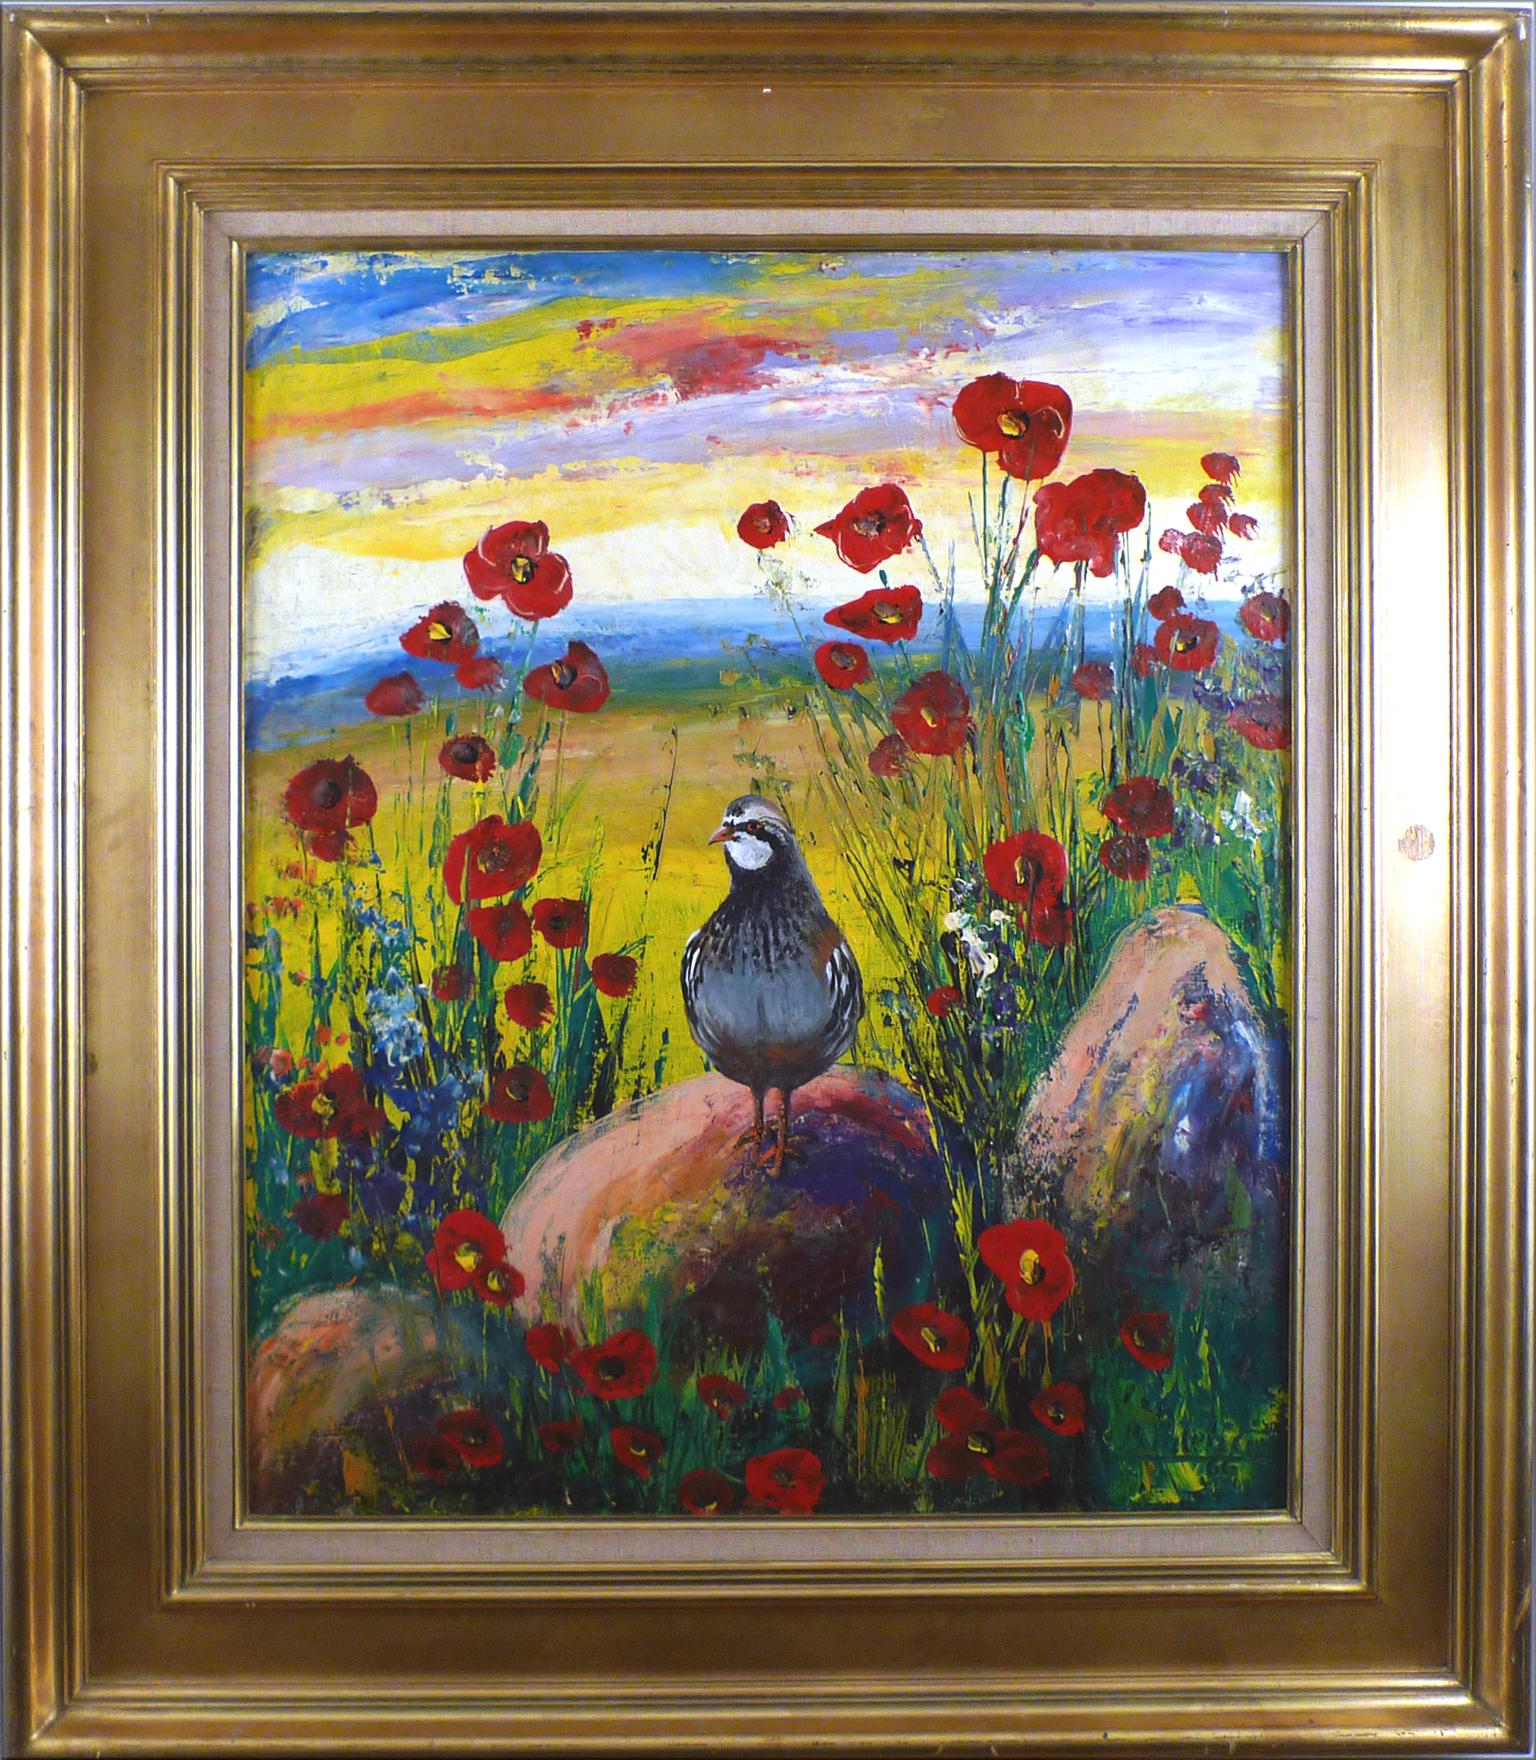 "The Partridge", huile sur toile du 20e siècle de l'artiste espagnol Benjamín Palencia 